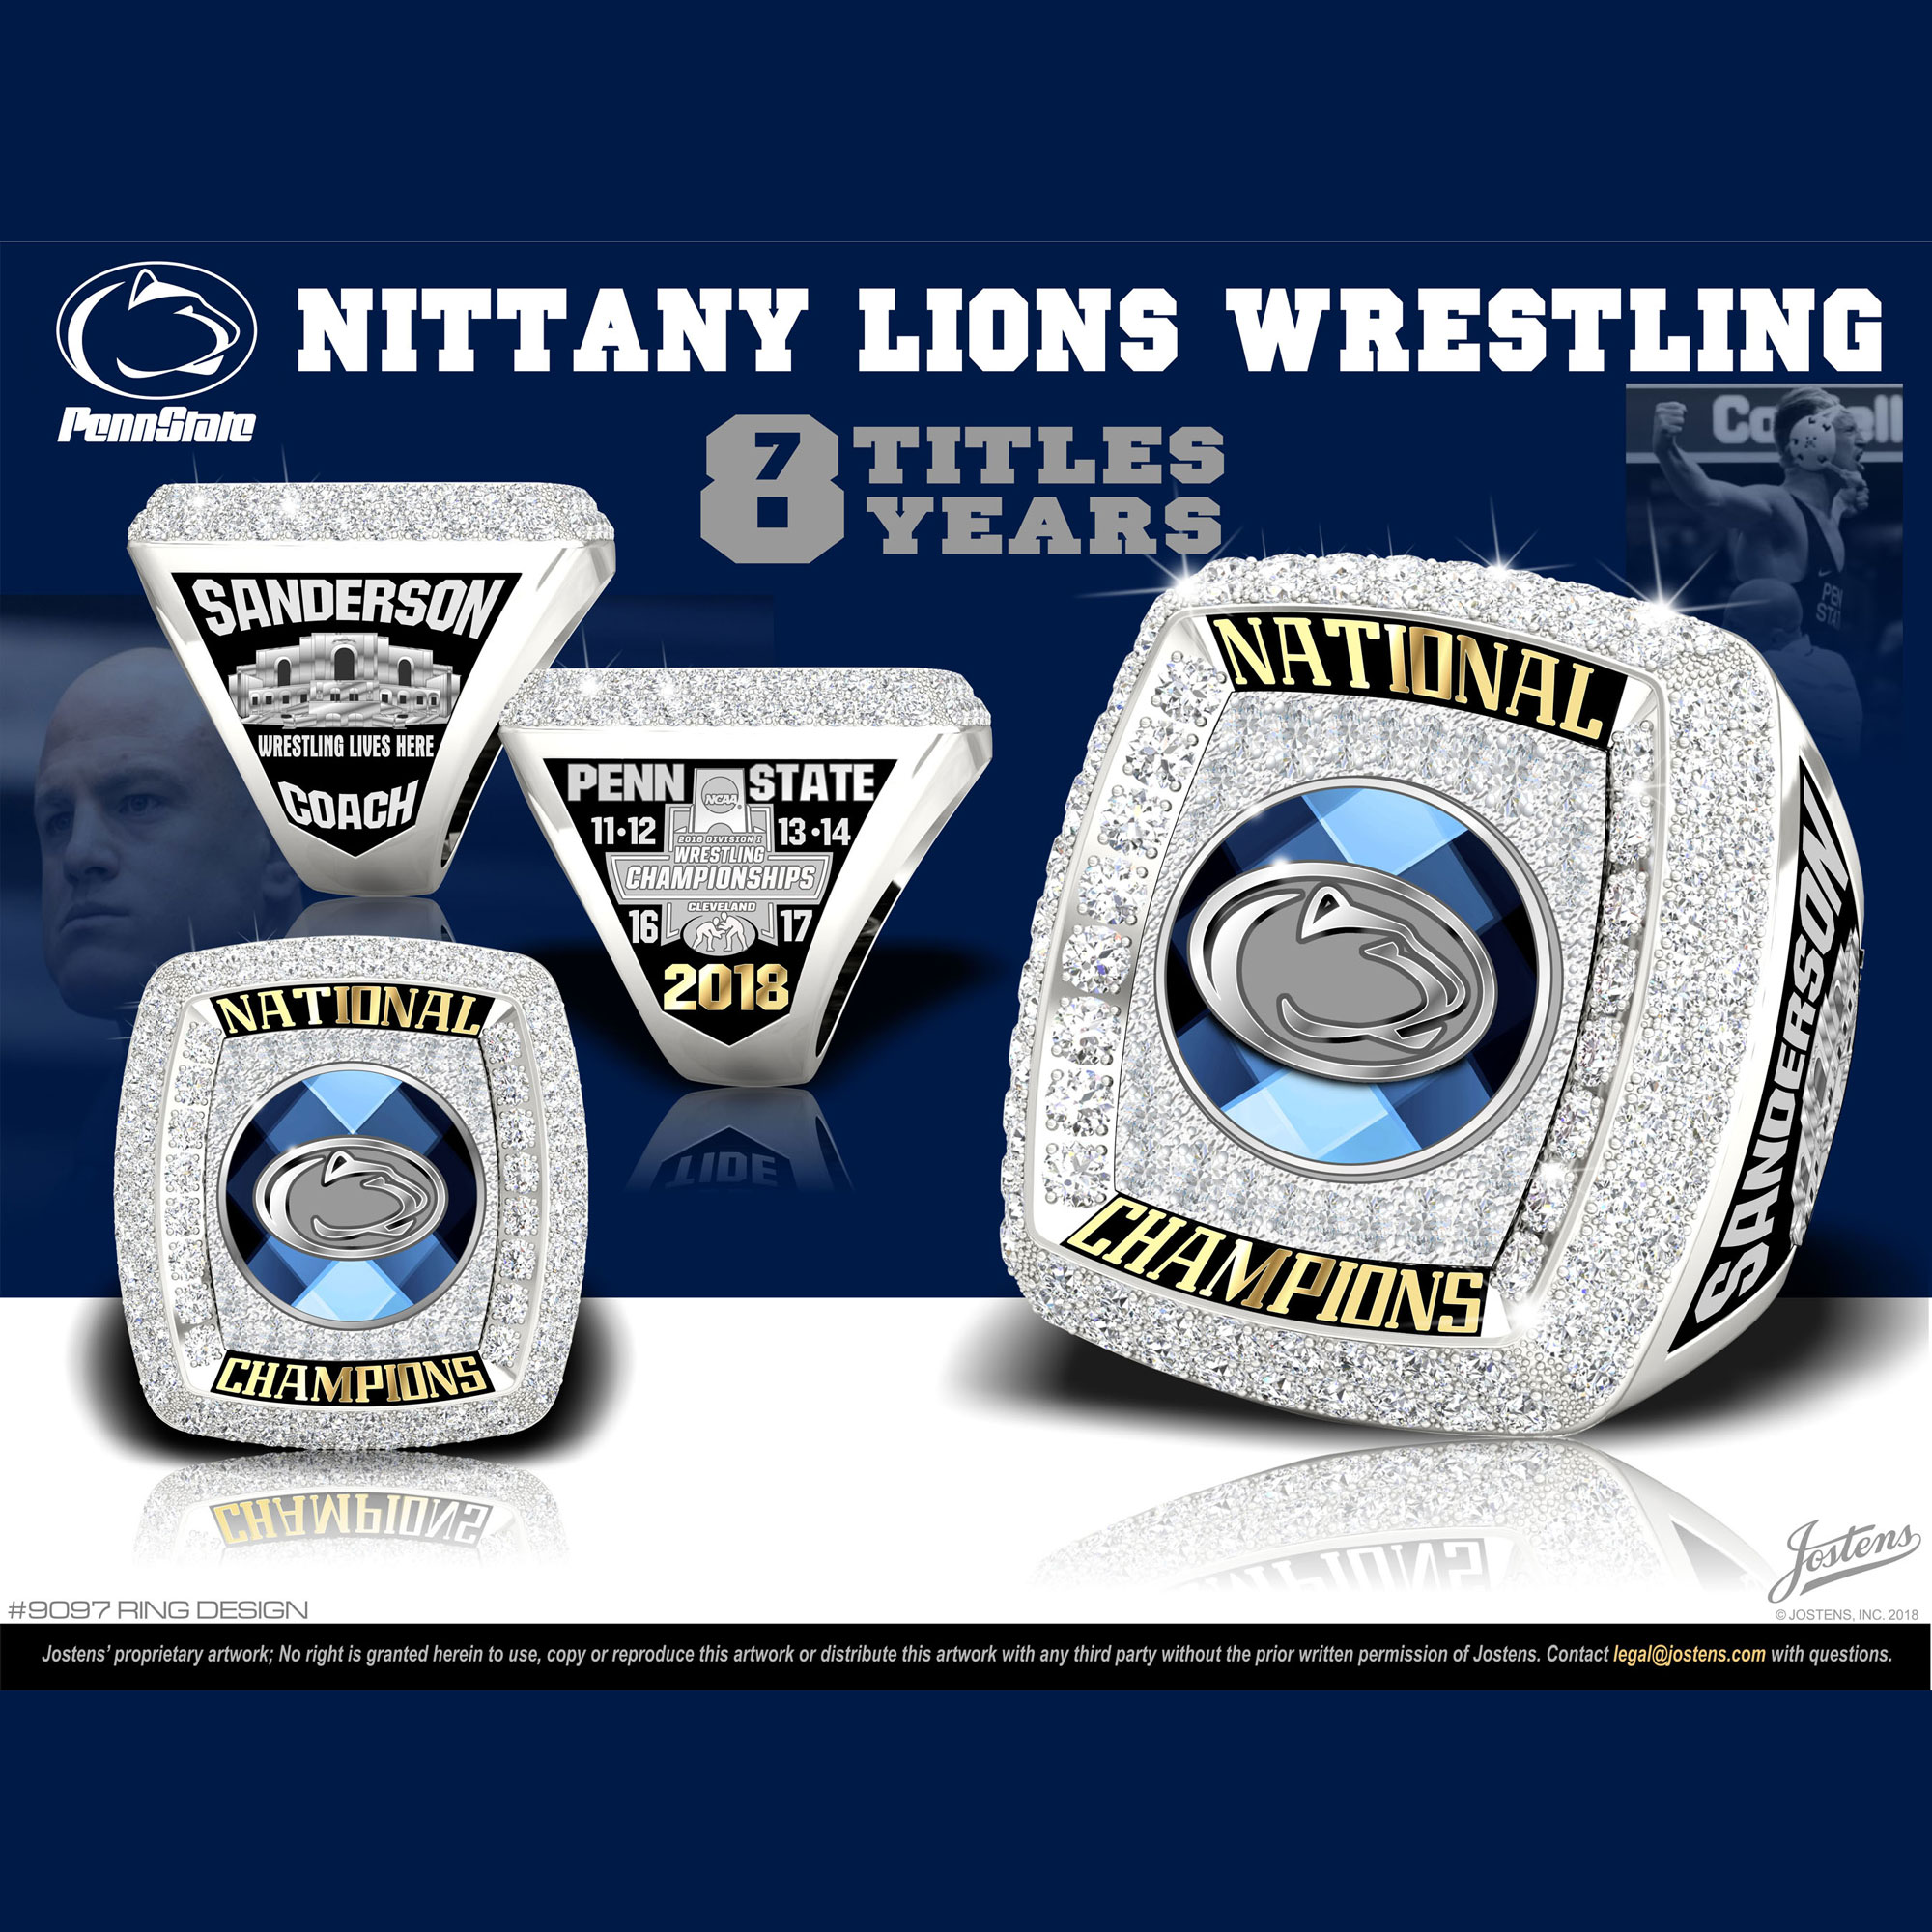 Penn State University Men's Wrestling 2018 National Championship Ring